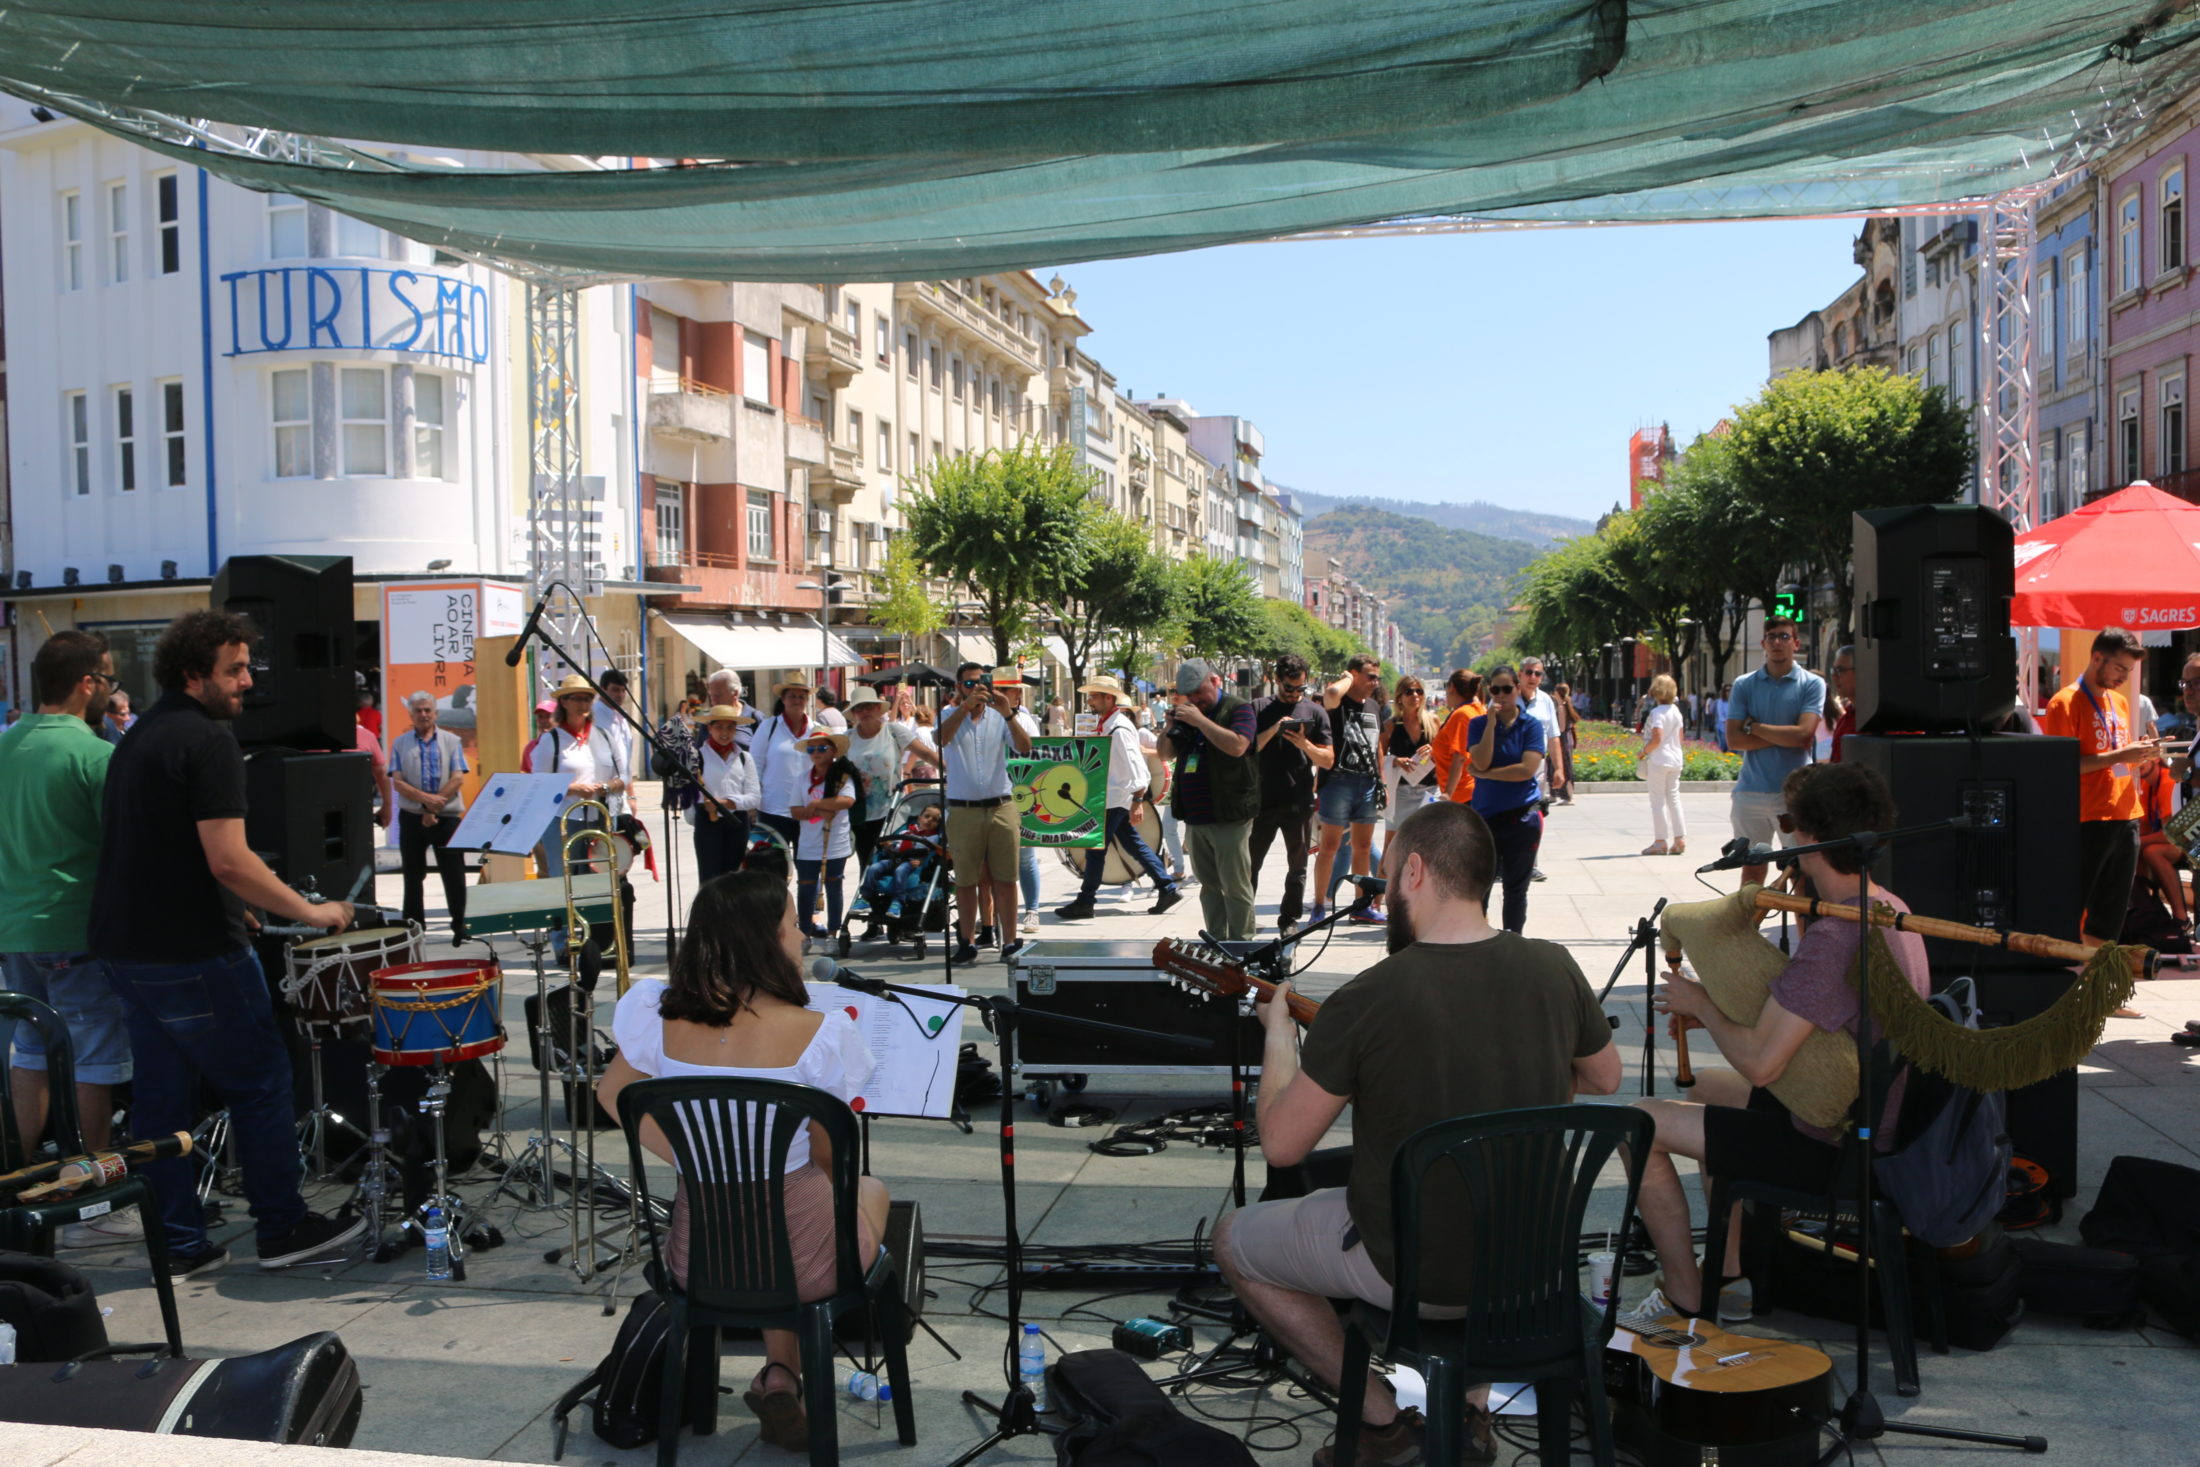 Festival de cultura e artes performativas dá mais vida ao centro histórico de Braga